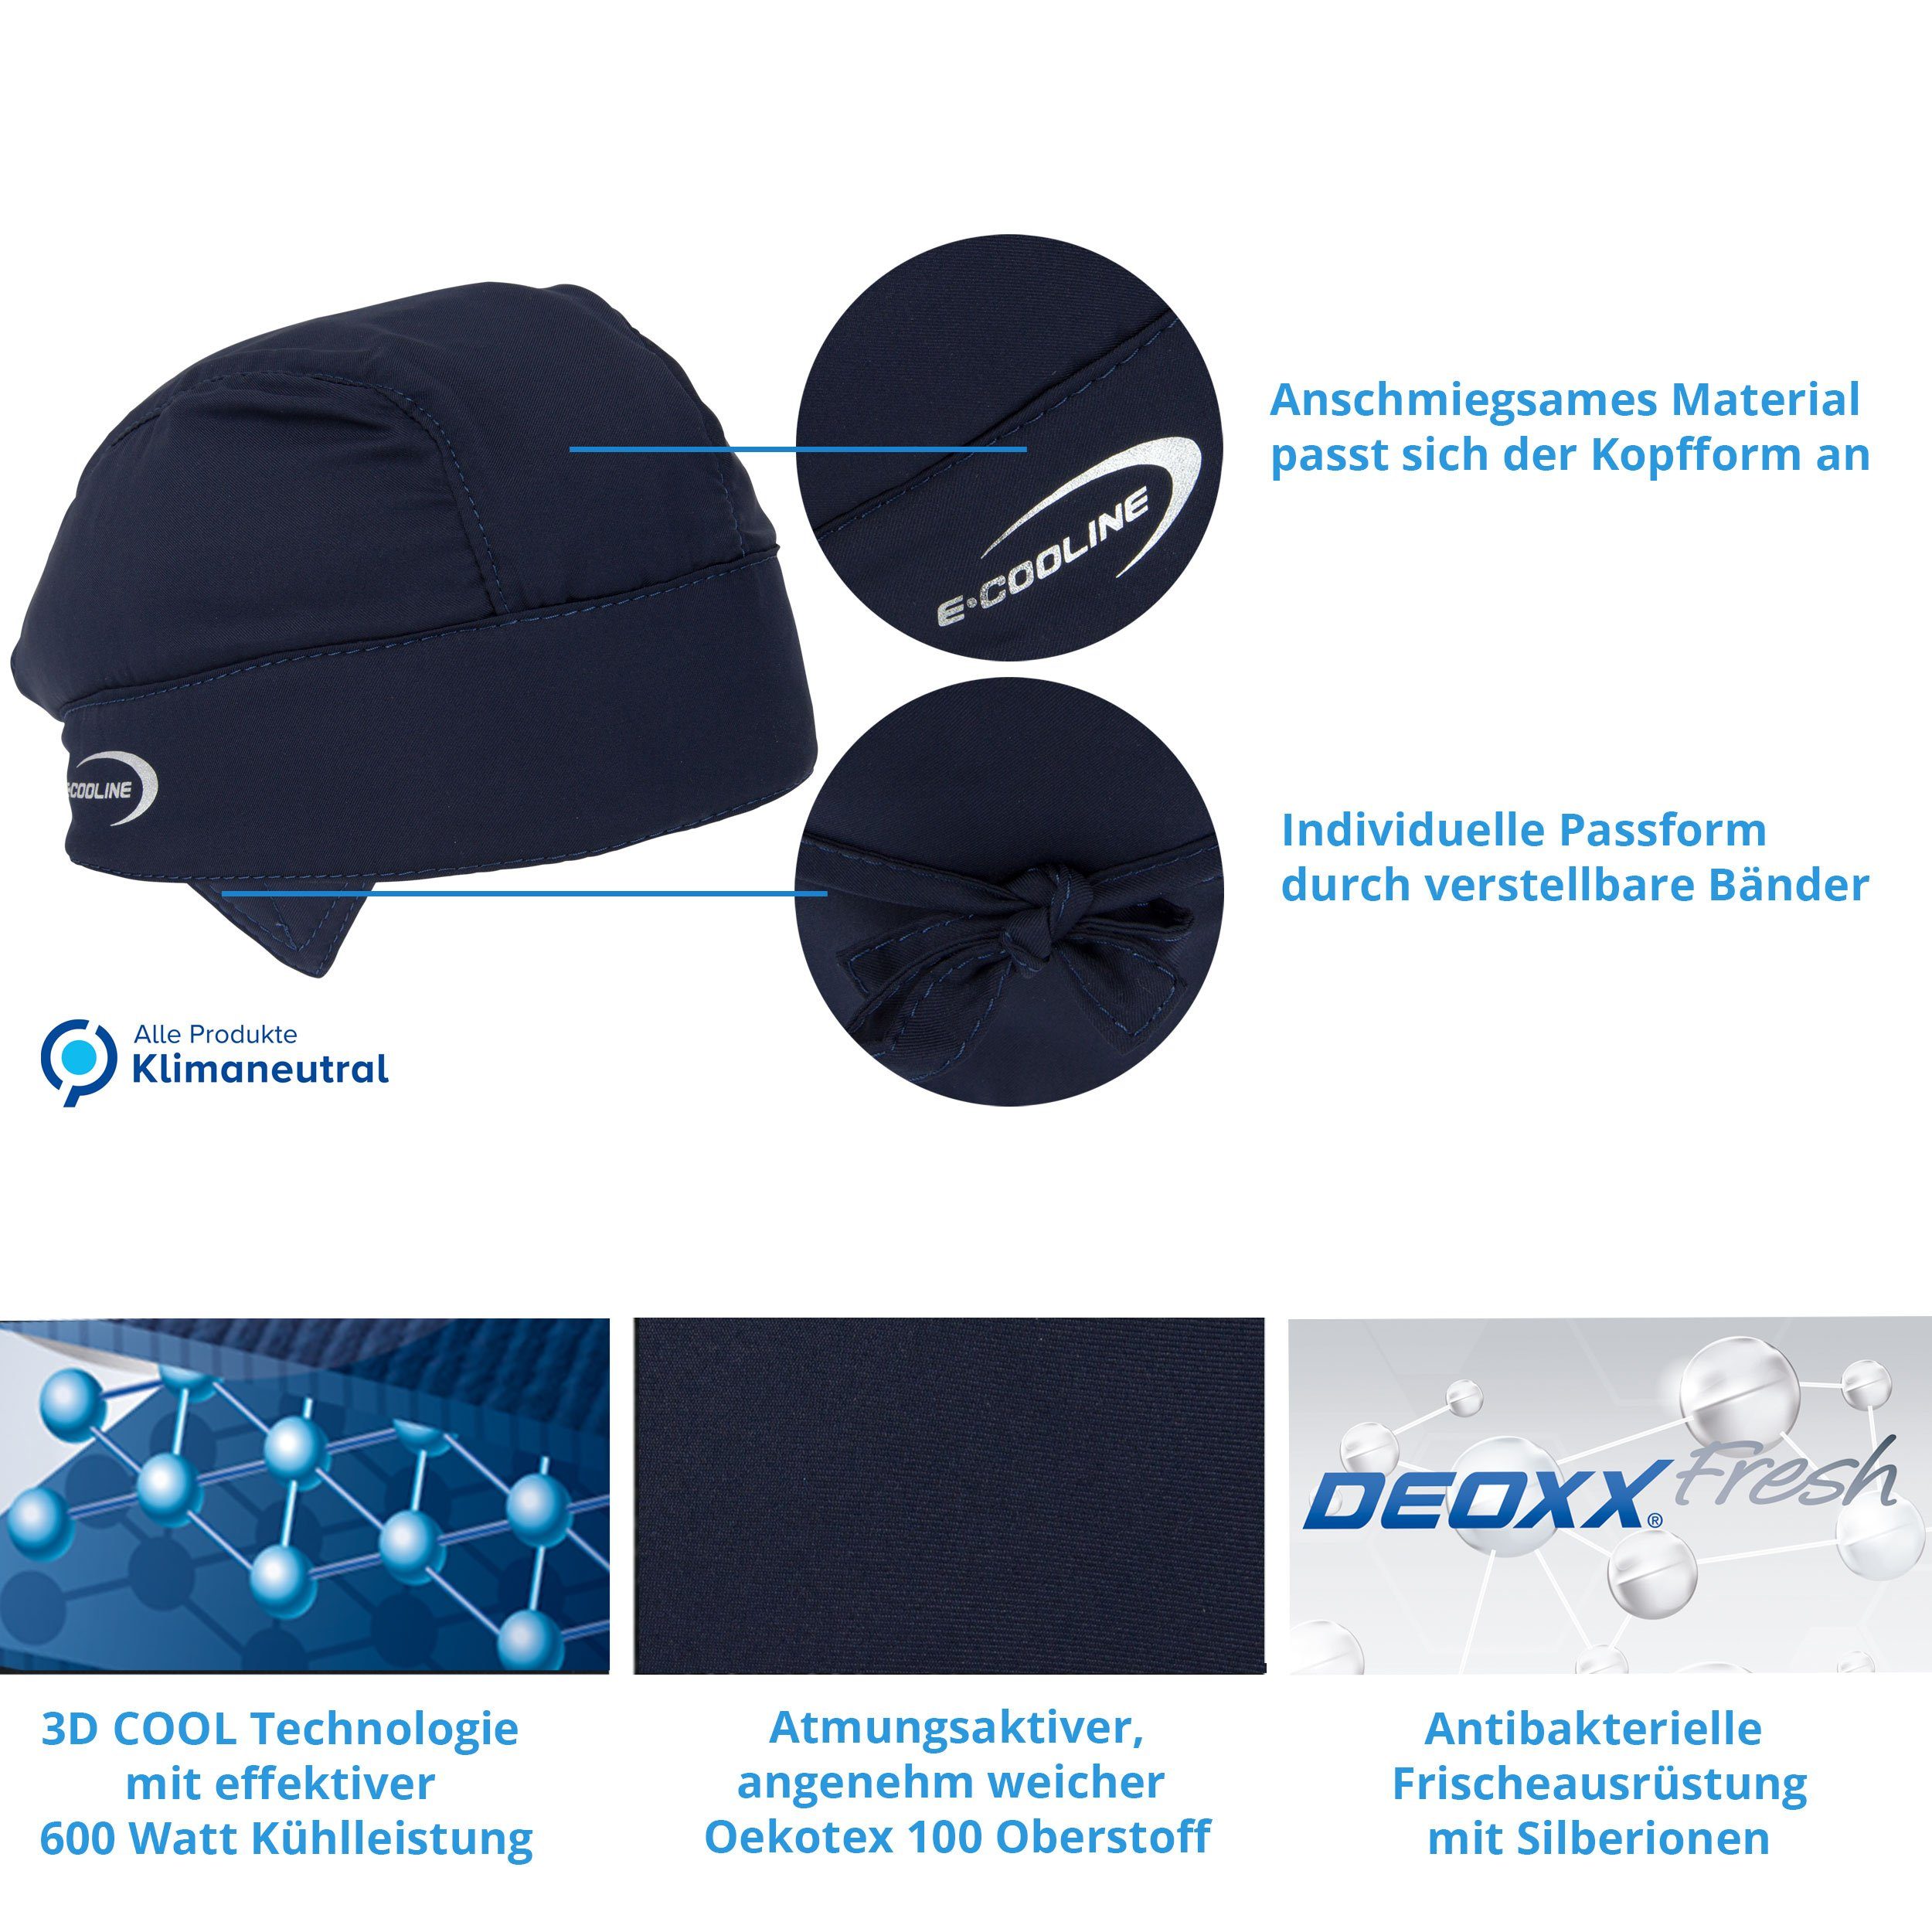 E.COOLINE Bandana - kühlend - zum aktive mit stundenlange Kühlung, Wasser, Aktivierung durch Blau Kühlung Klimaanlage Anziehen